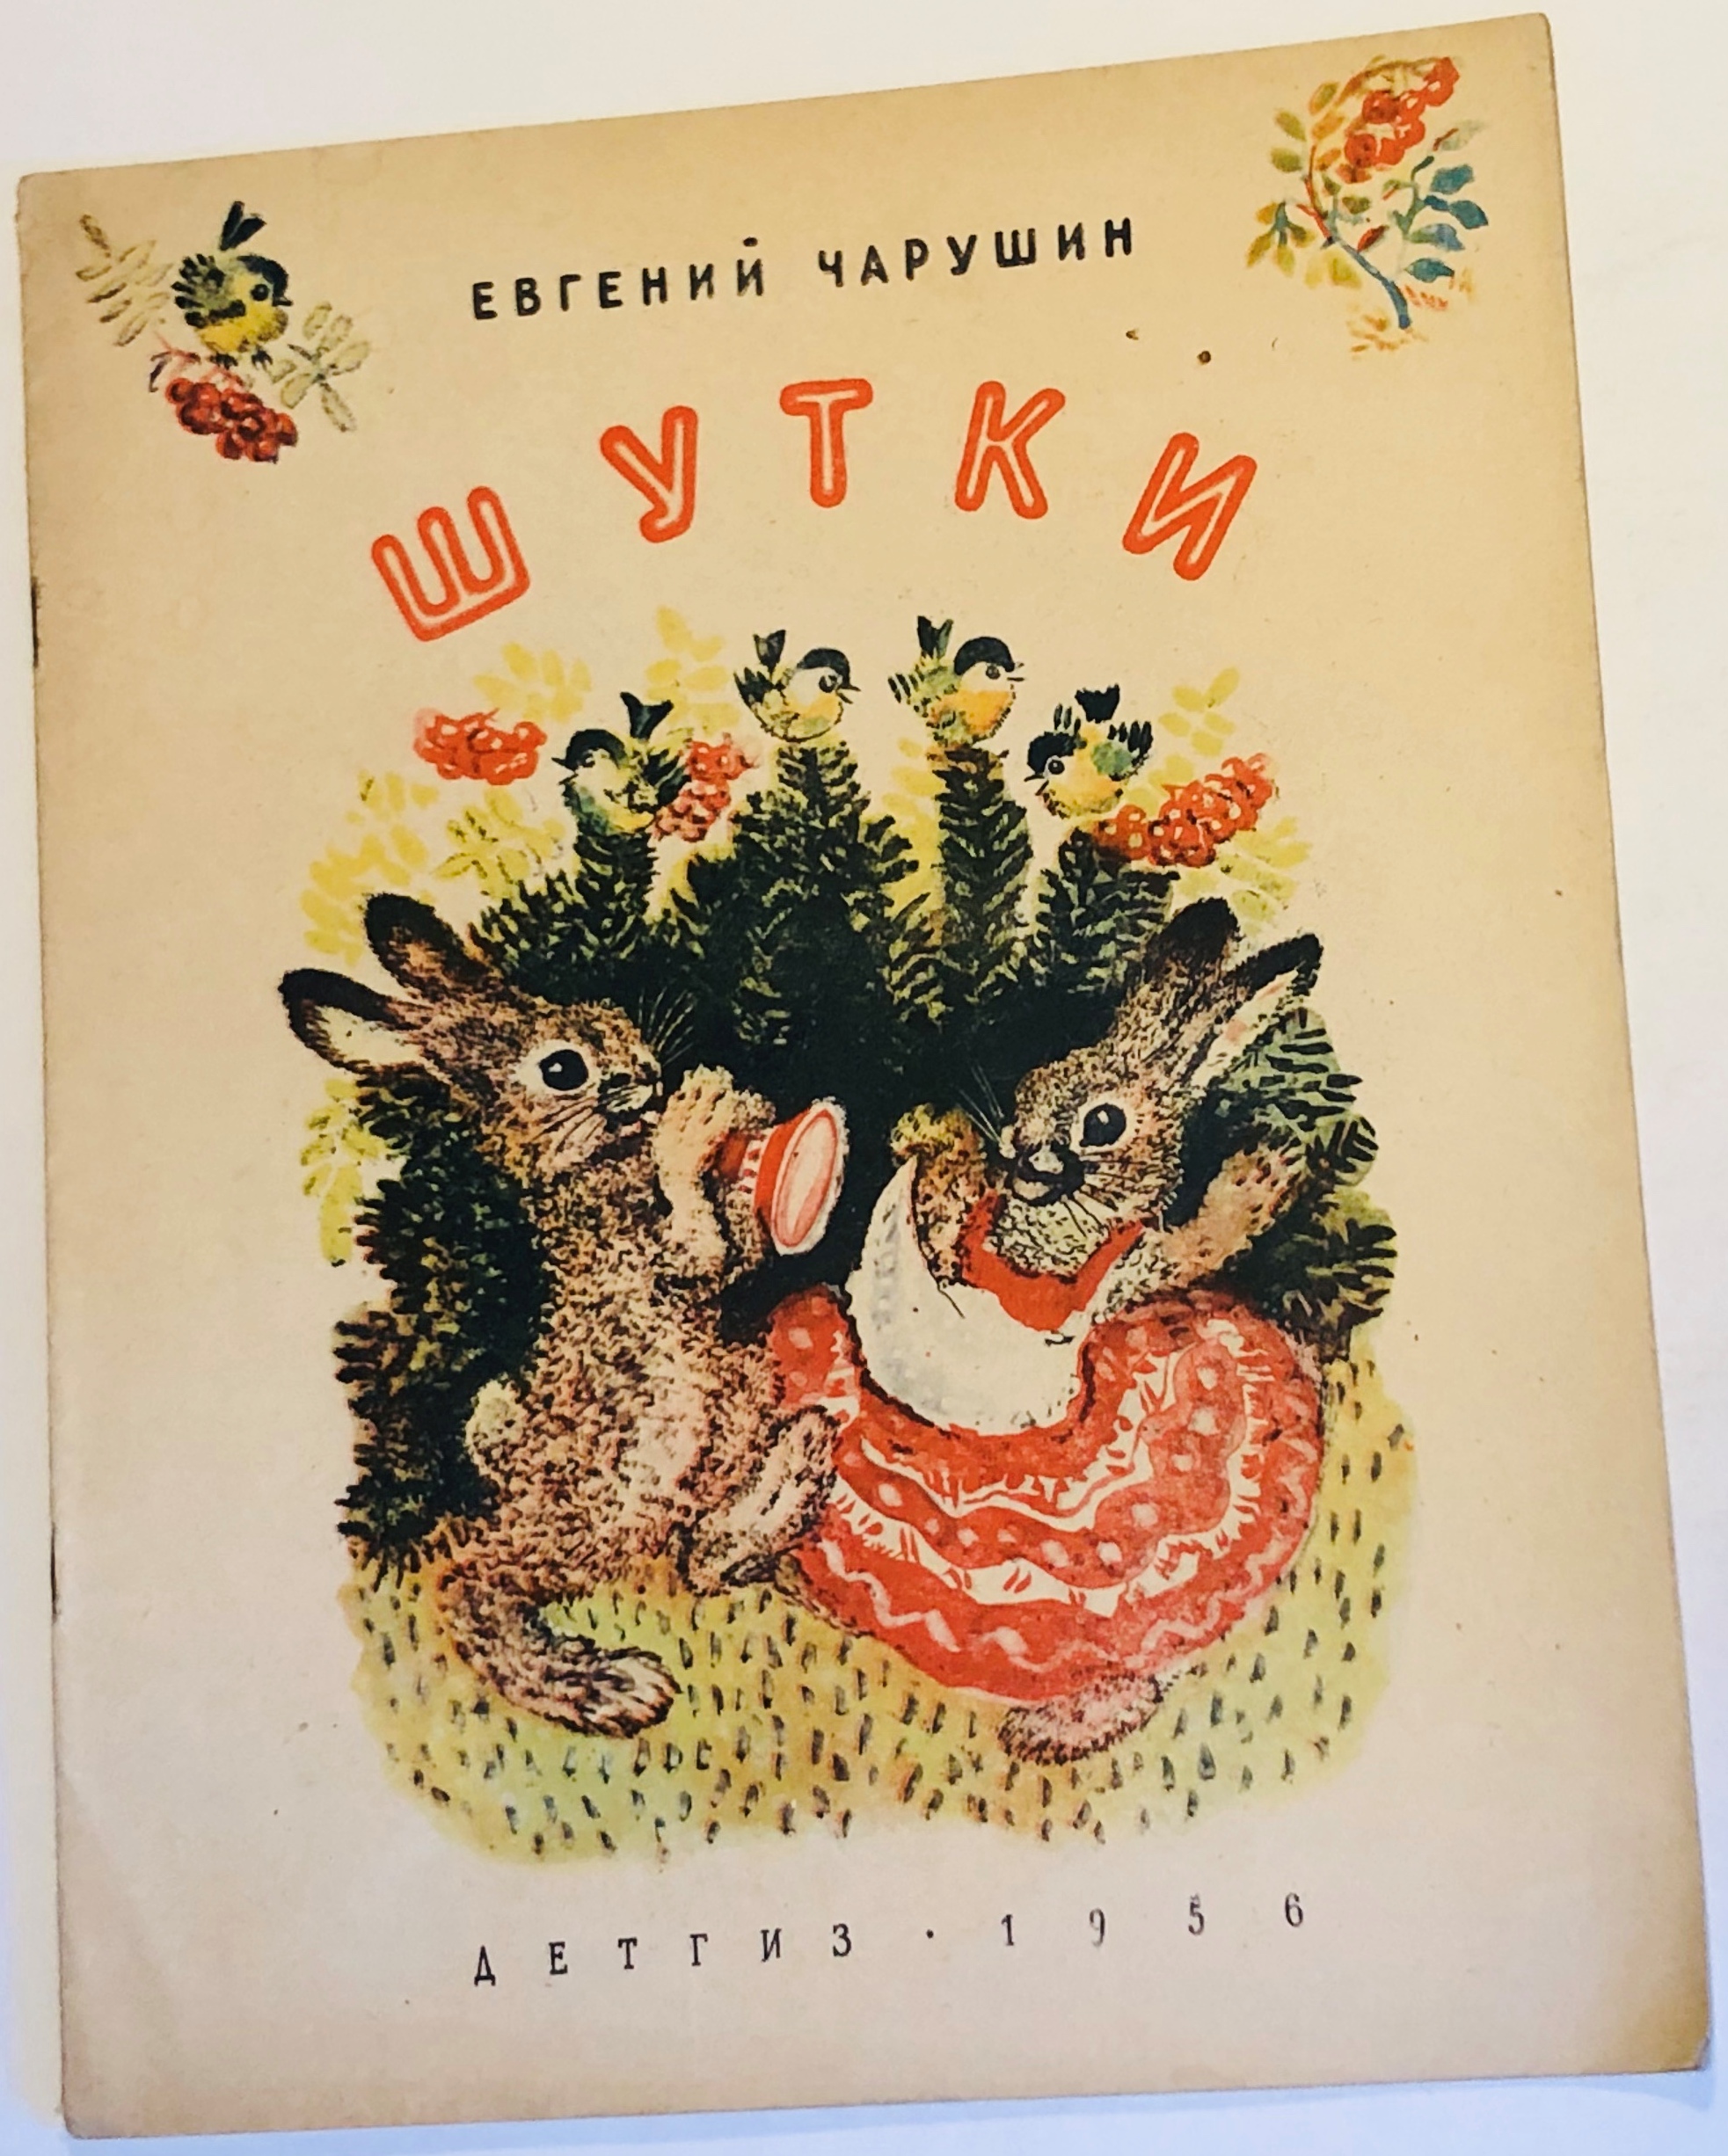 Иллюстрация детских книг Евгений Чарушин